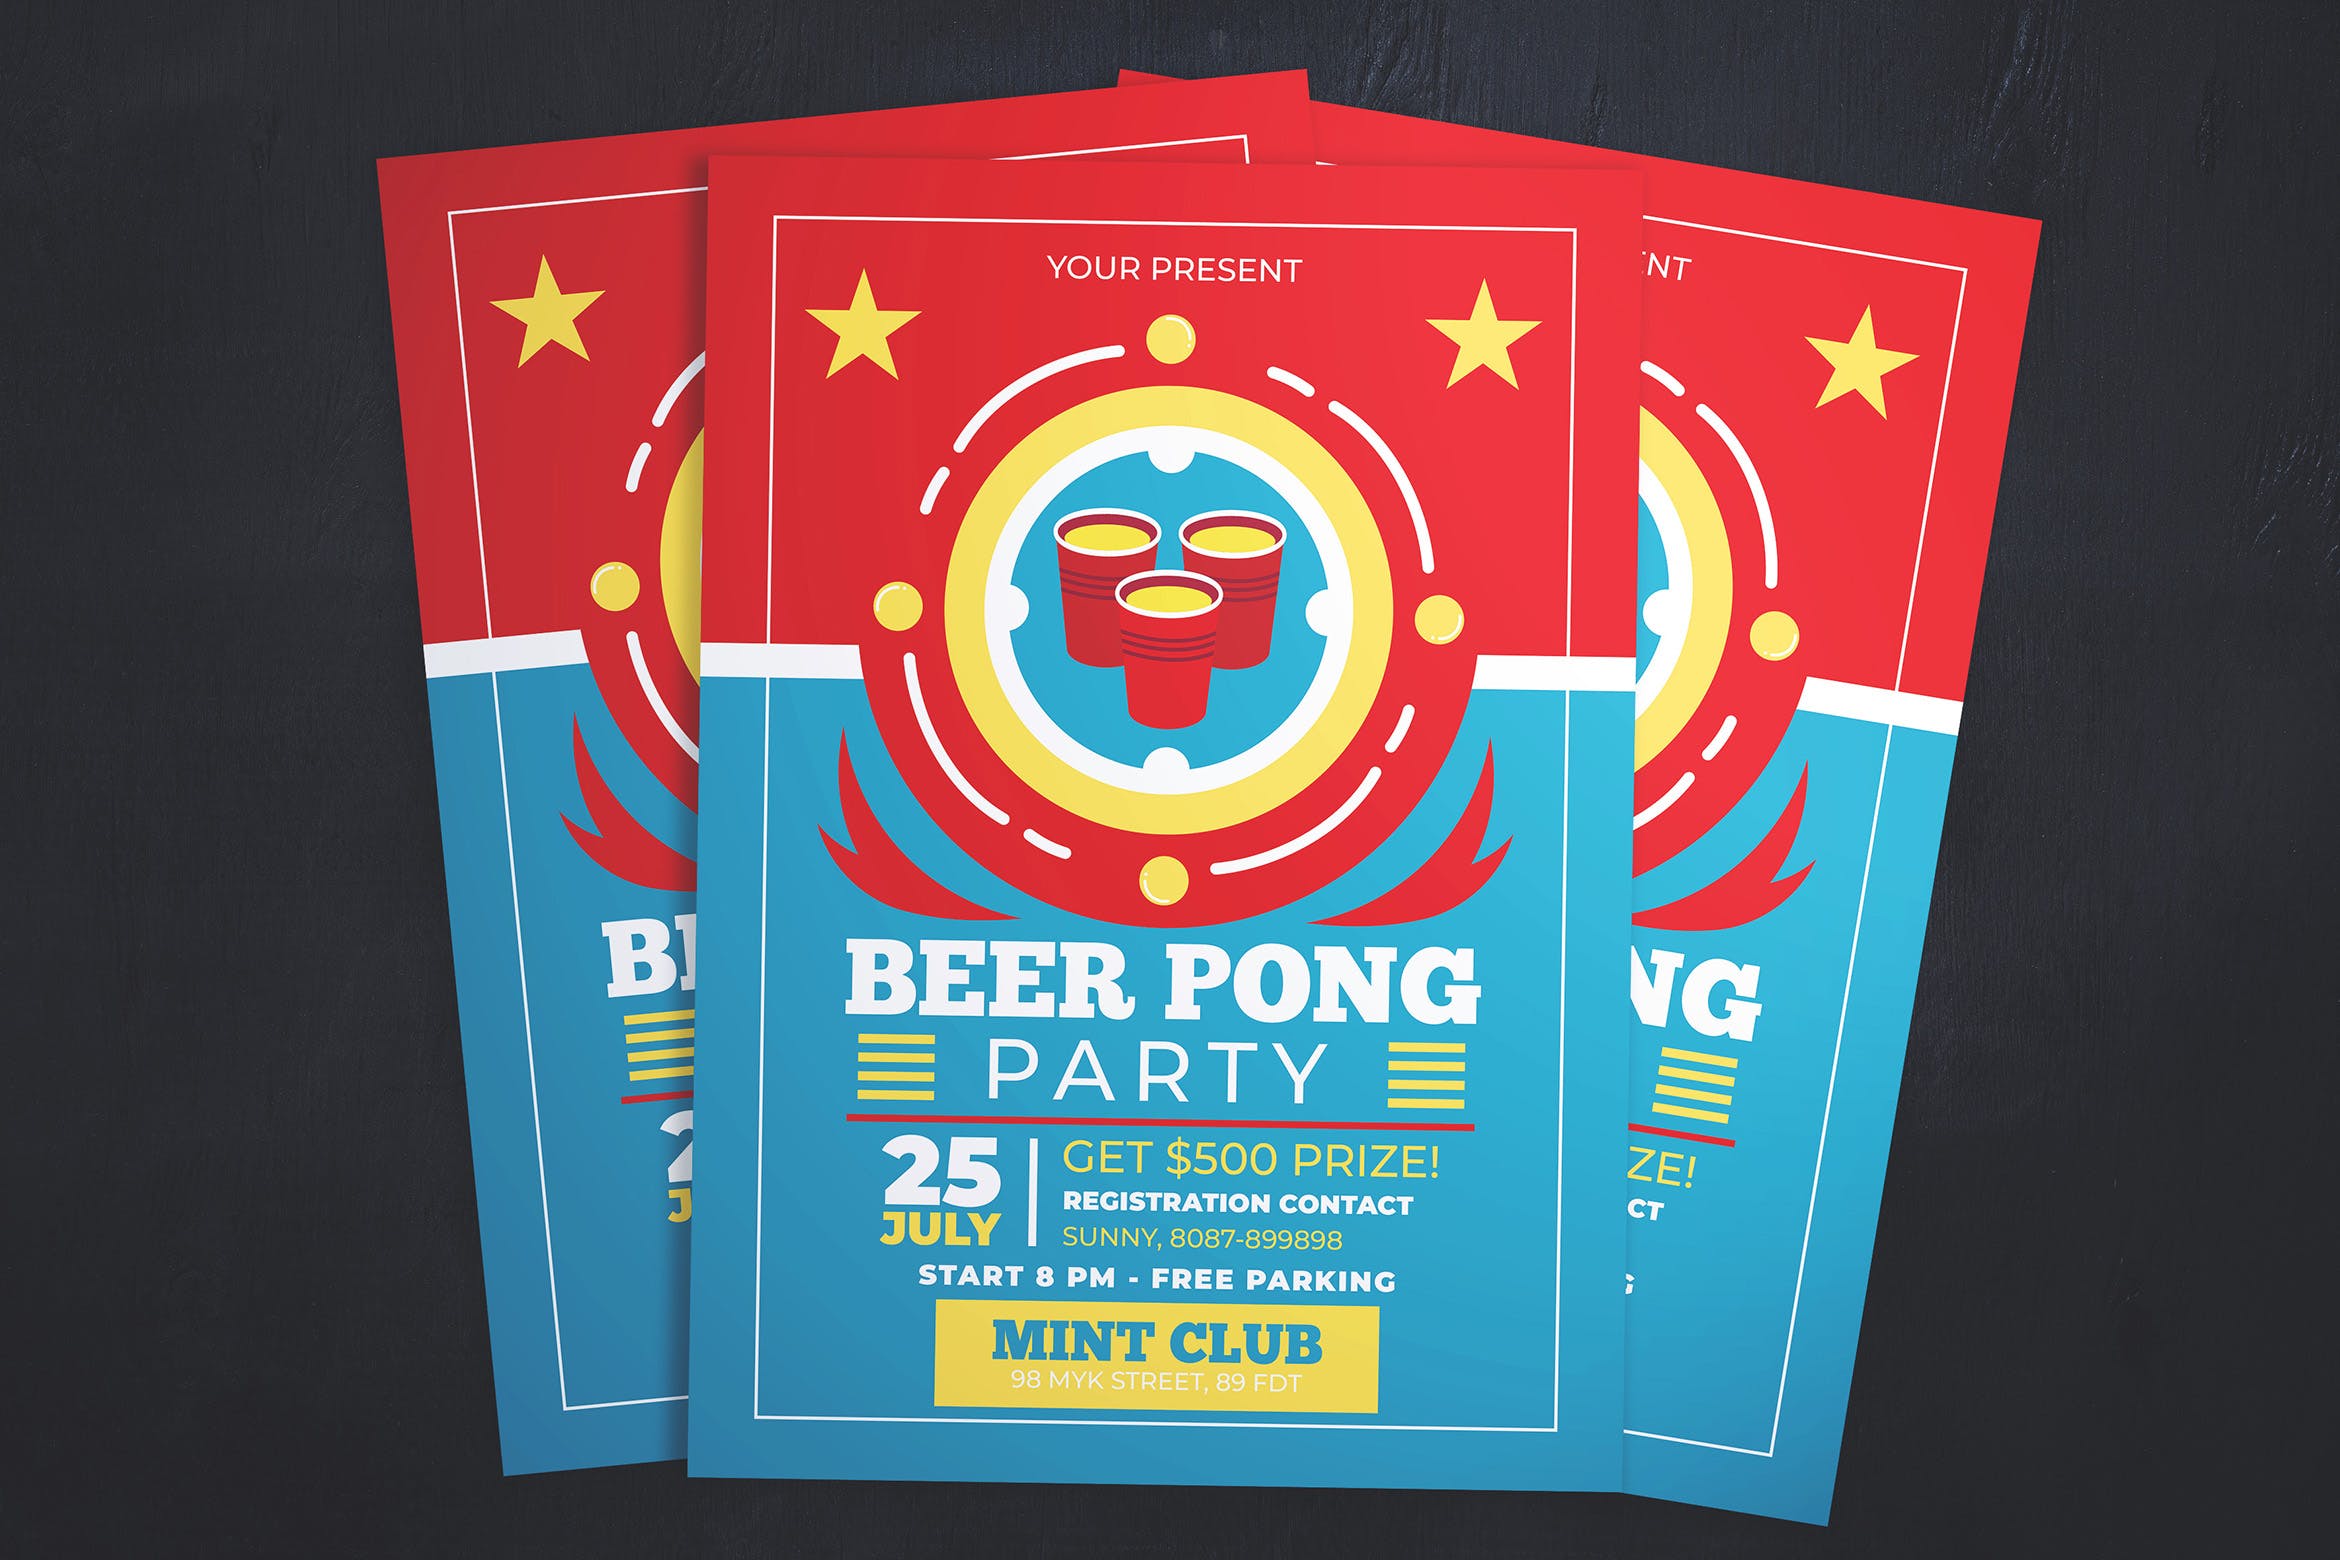 啤酒派对啤酒节活动海报传单设计模板 Beer Pong Party Flyer插图